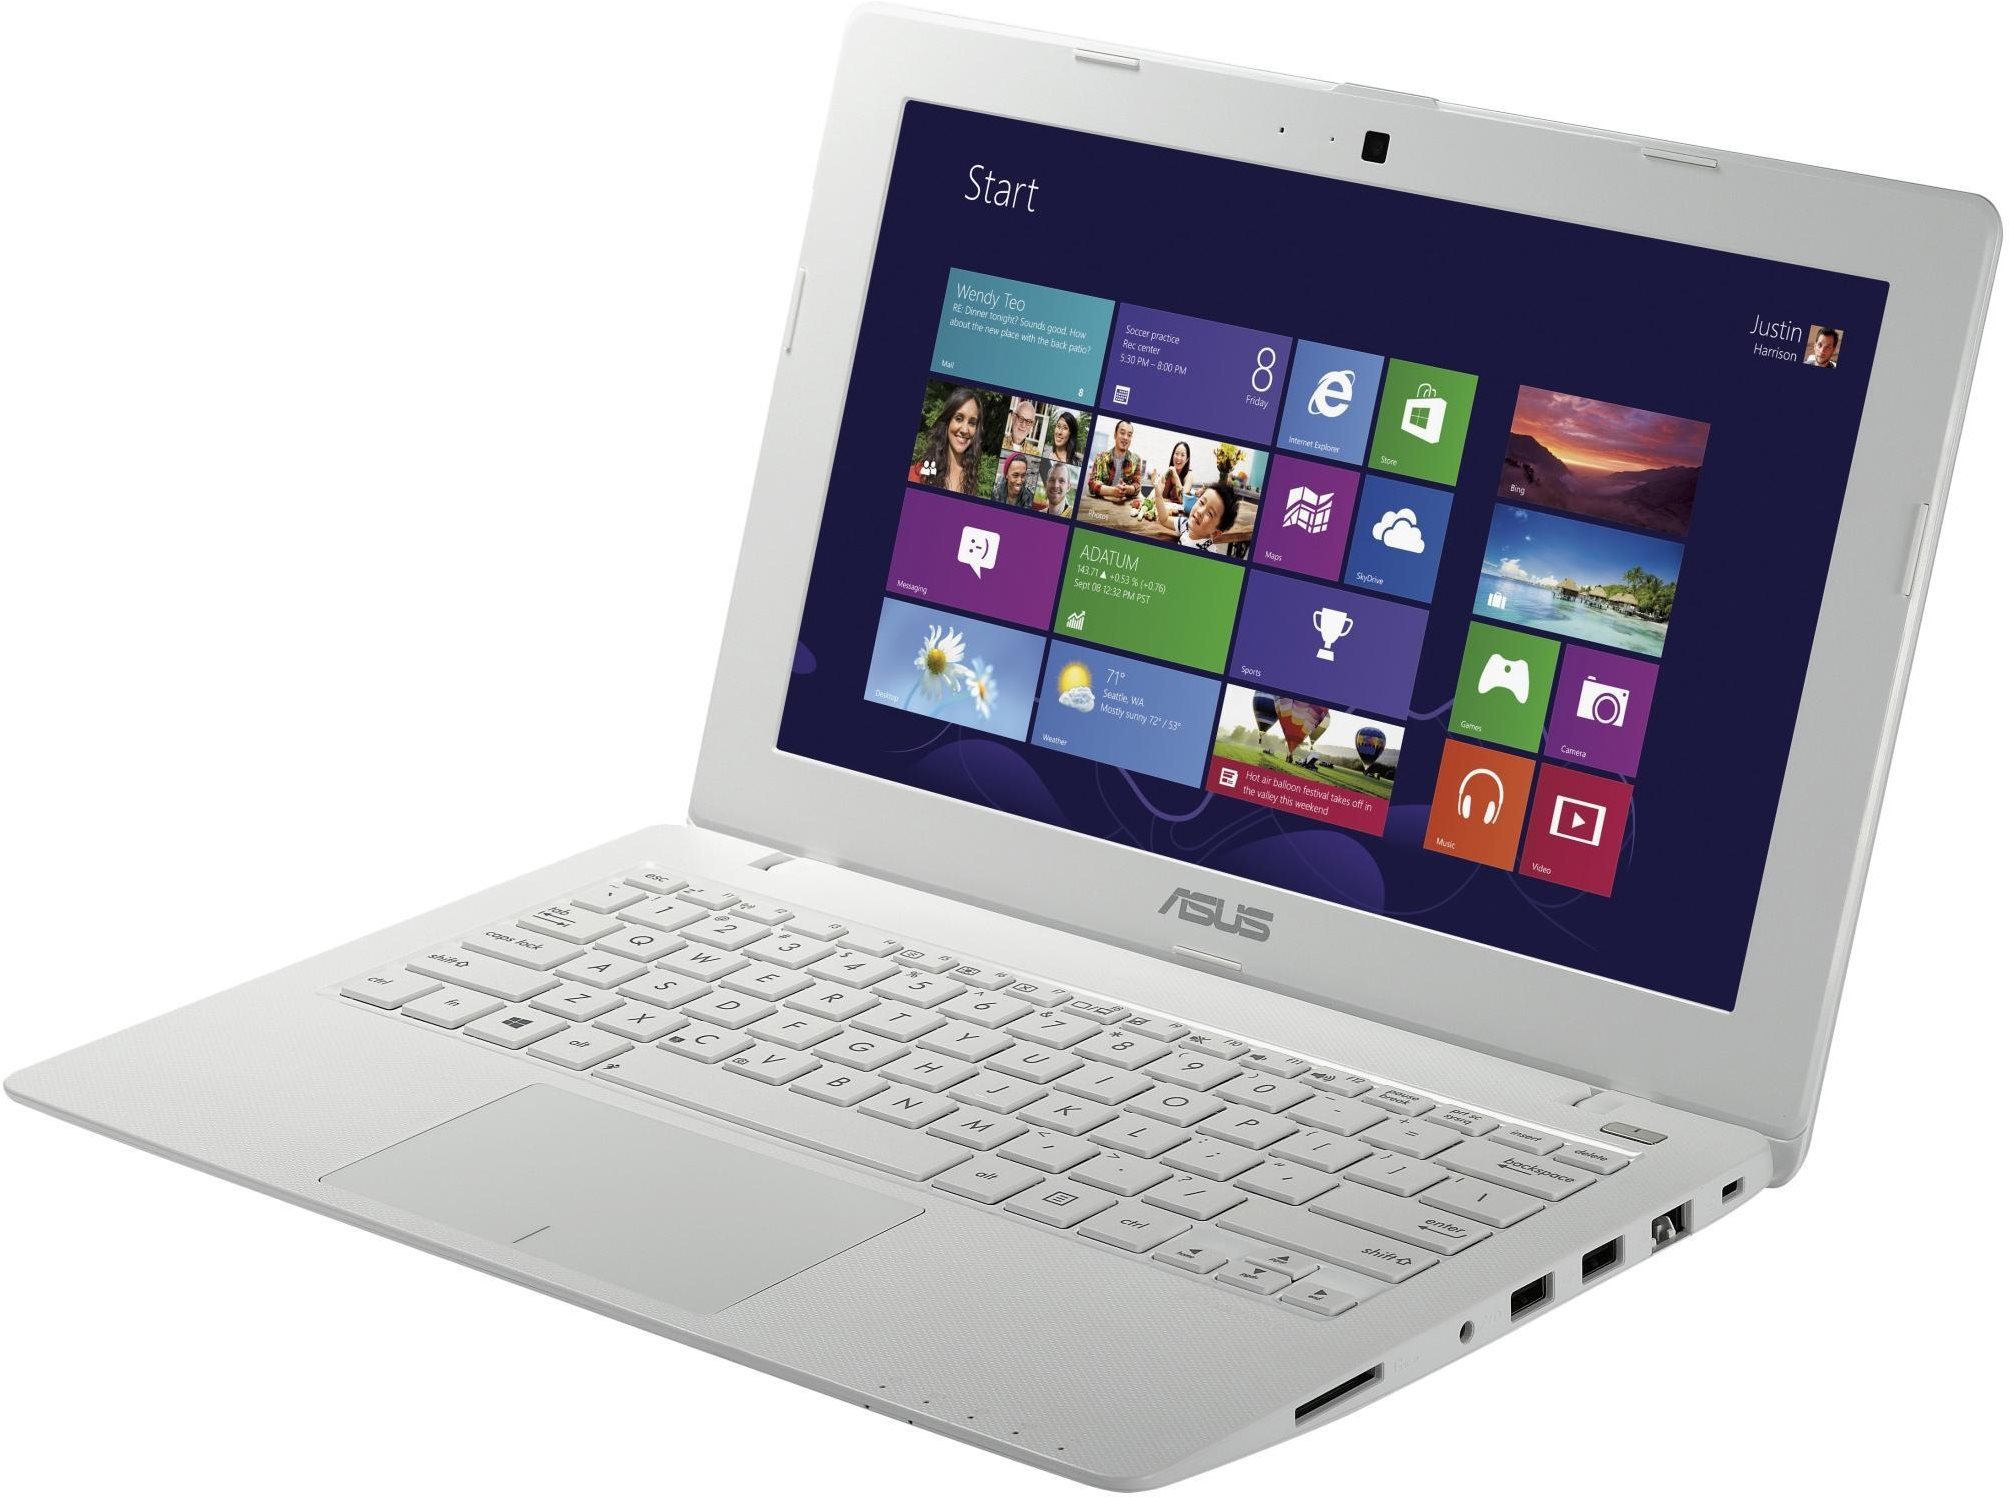 ASUS X200MA-BING-KX432B white (SK version) - Laptop | Alza.cz